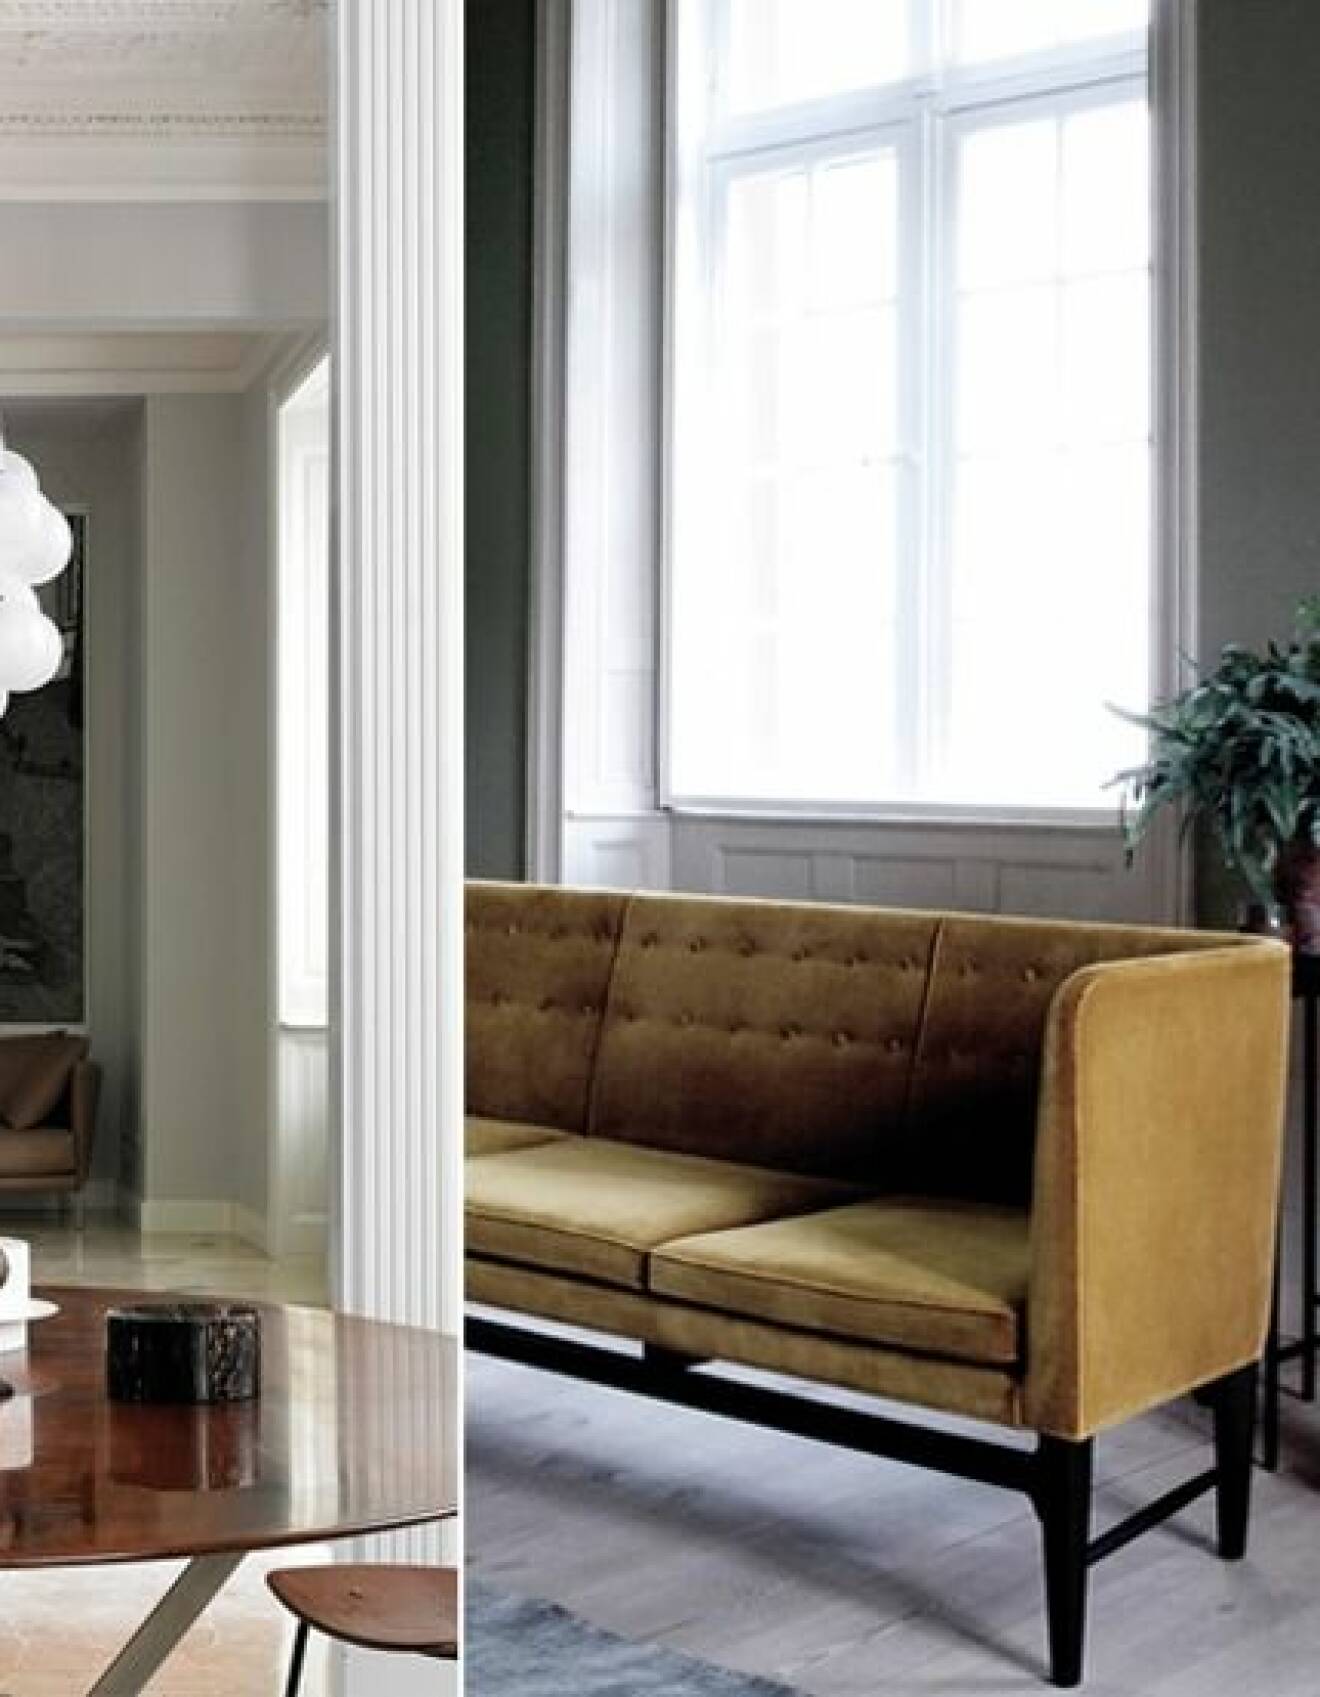 Hopfällbara möbler på balkongen gör den både praktisk och snygg